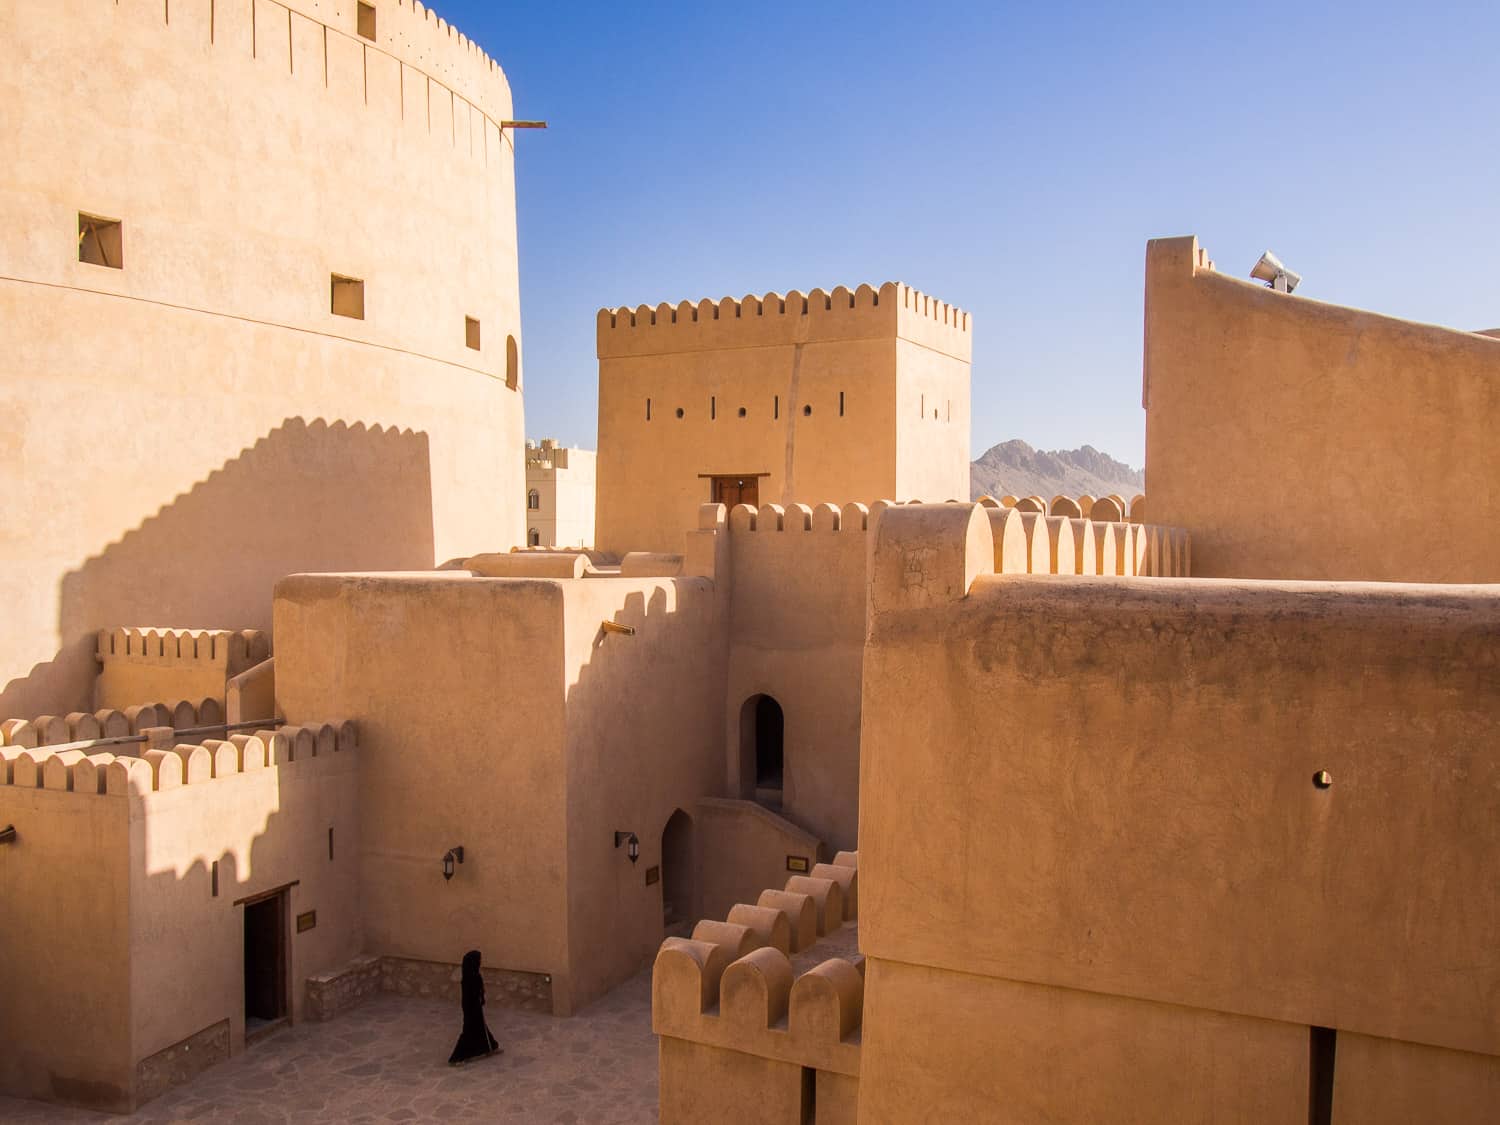 Tall towers at Nizwa Fort, Oman